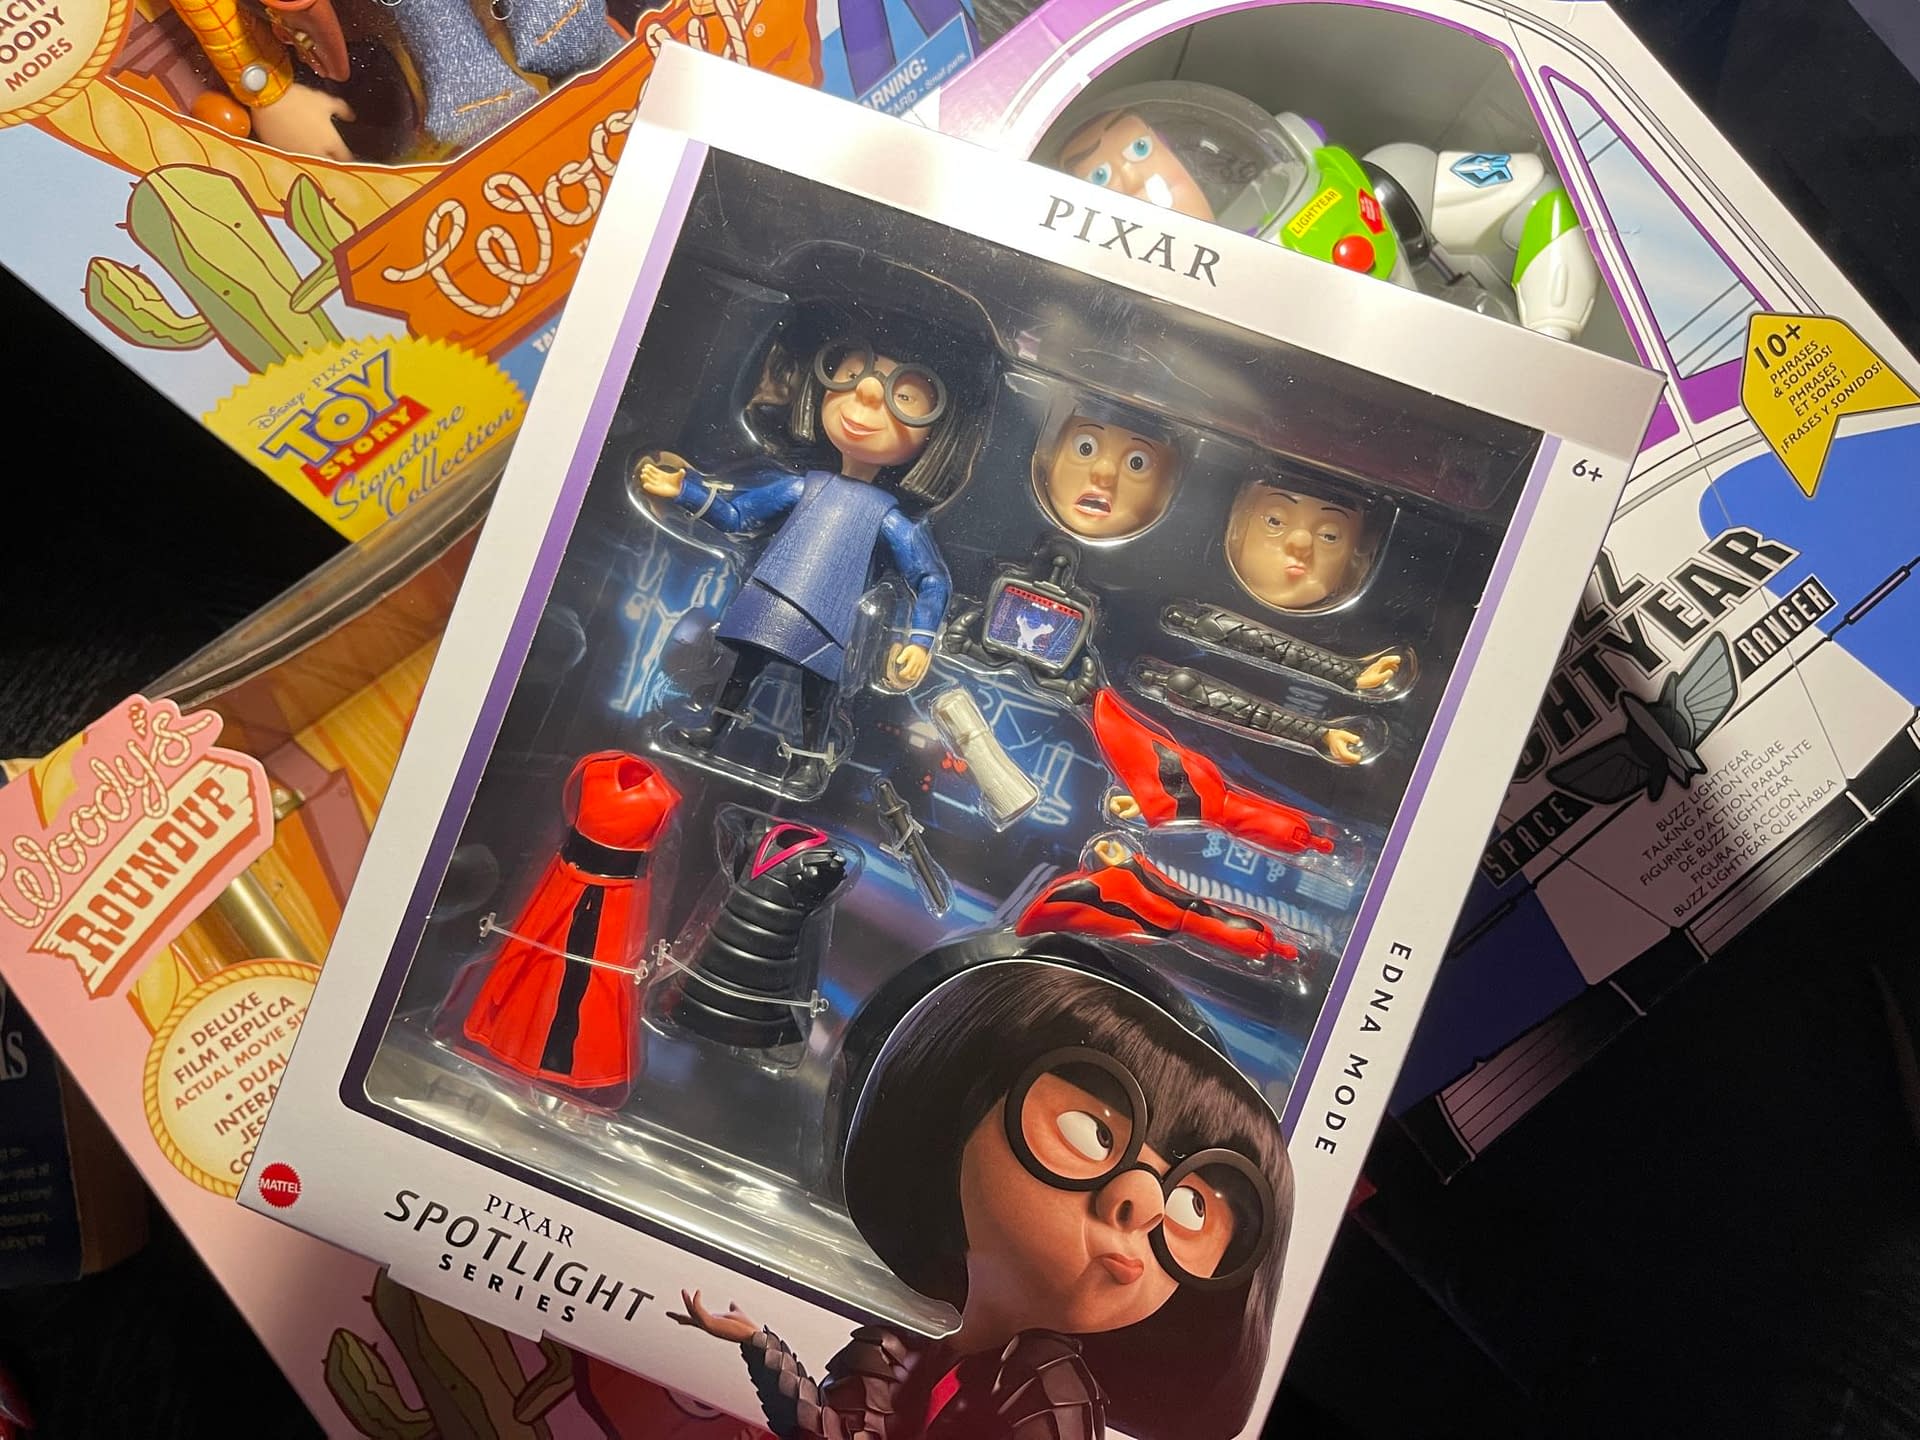 Mattel's Impressive Pixar Spotlight Series is a Collectors Dream